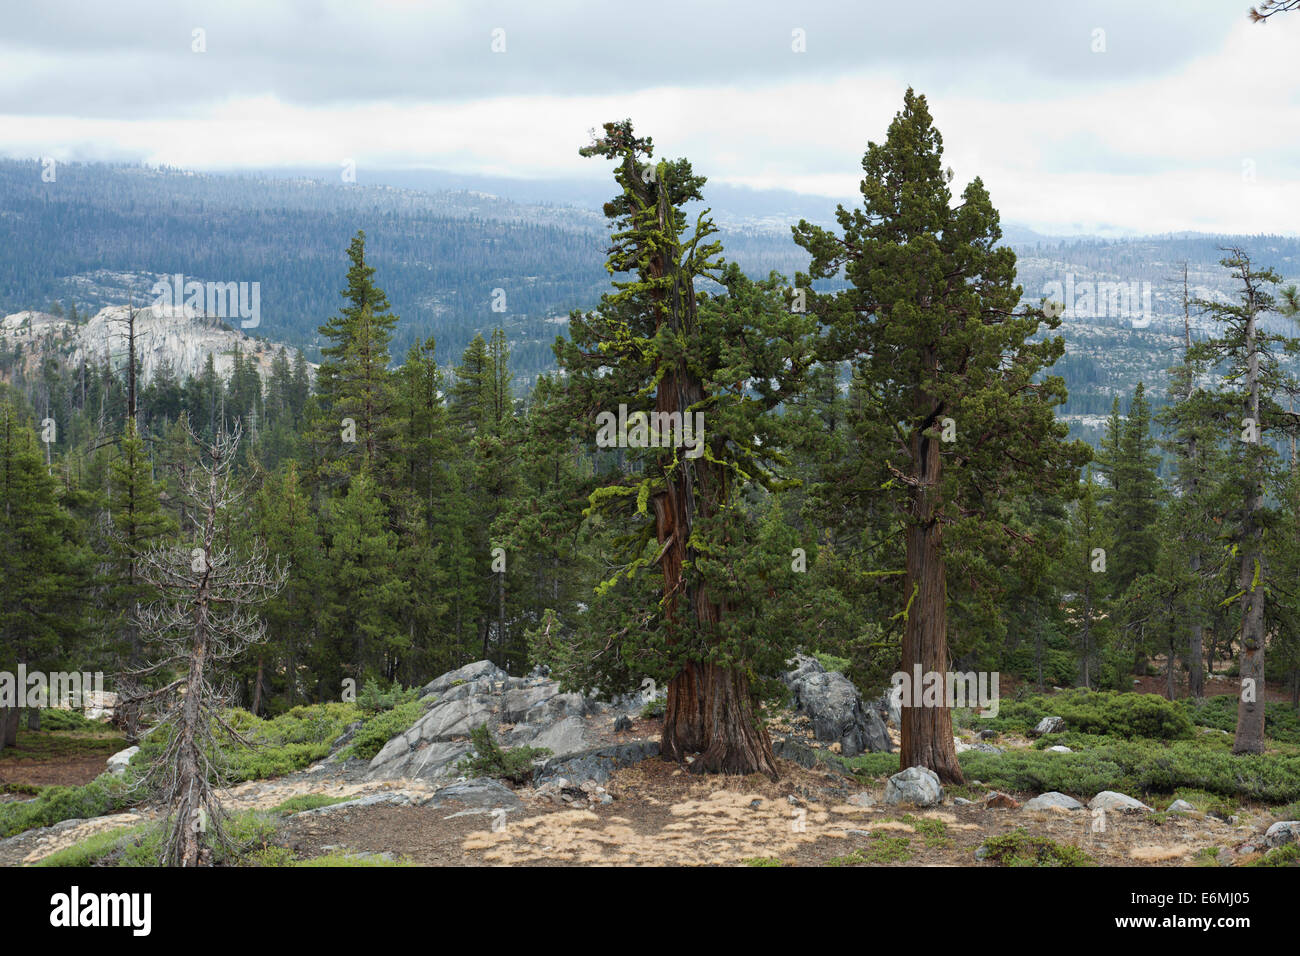 Sierra di alberi di ginepro (Juniperus occidentalis) della High Sierra Nevada - Yosemite, California USA Foto Stock